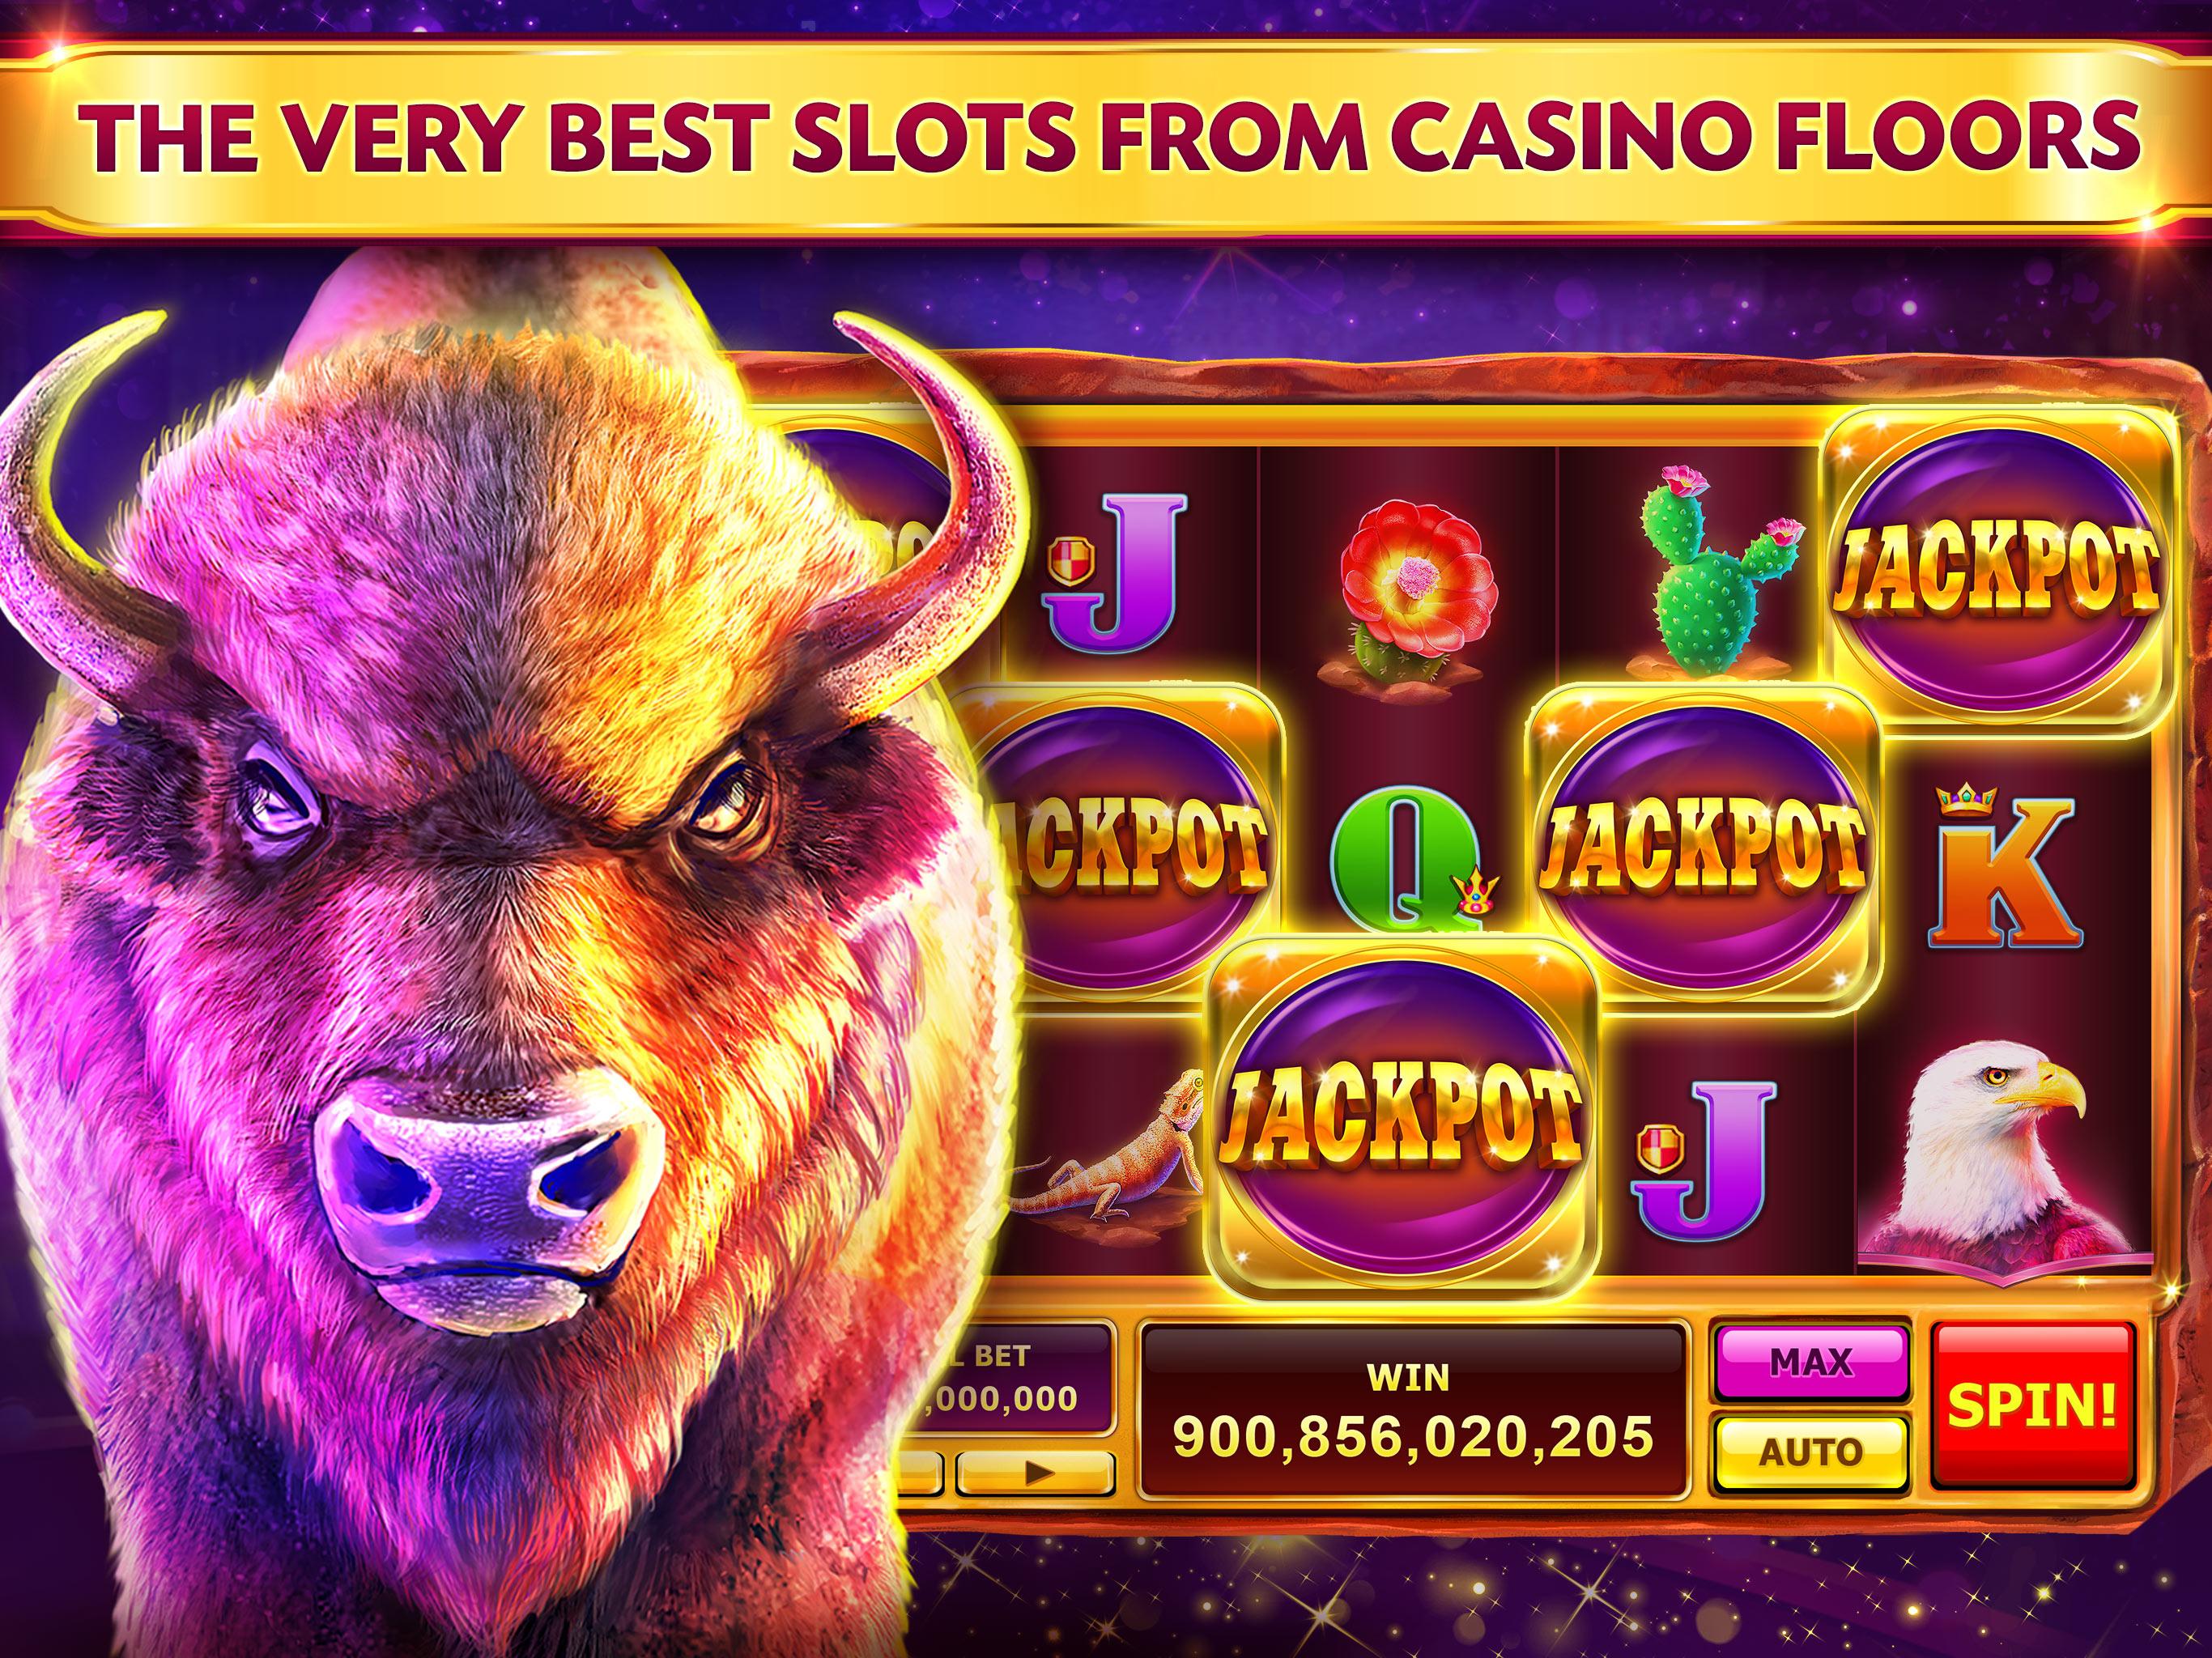 caesars casino pokies slot machines games